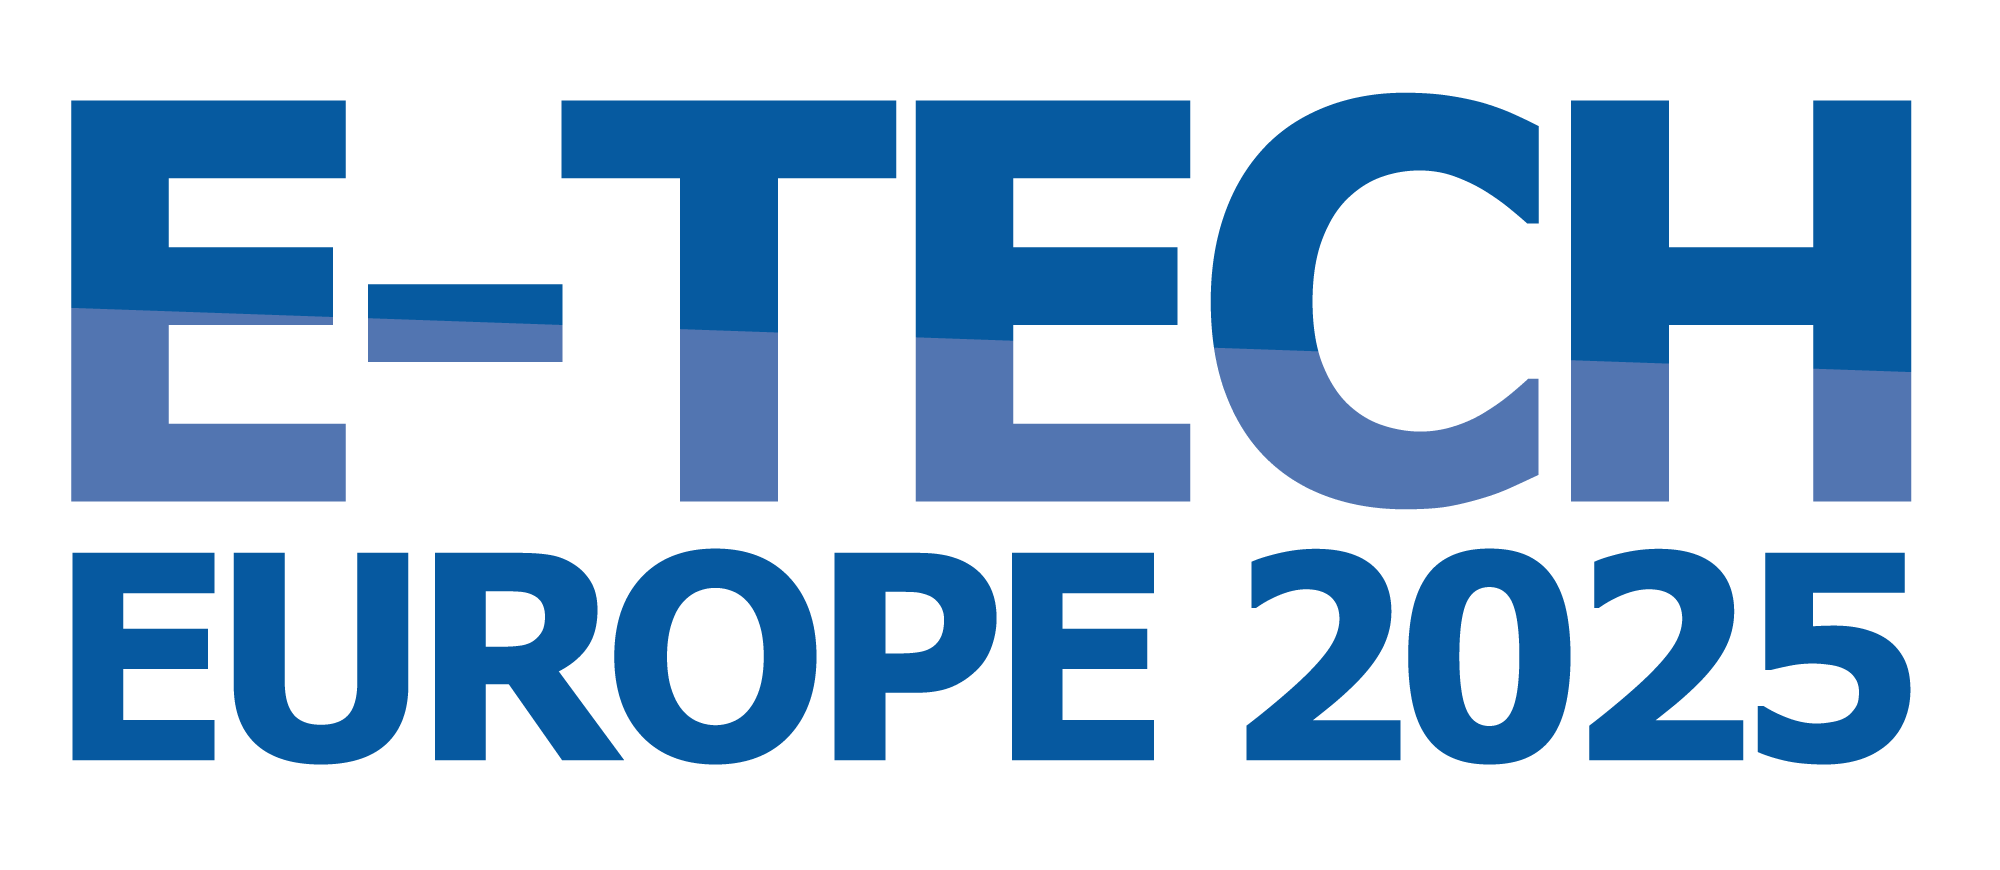 2025_E-Tech_logo